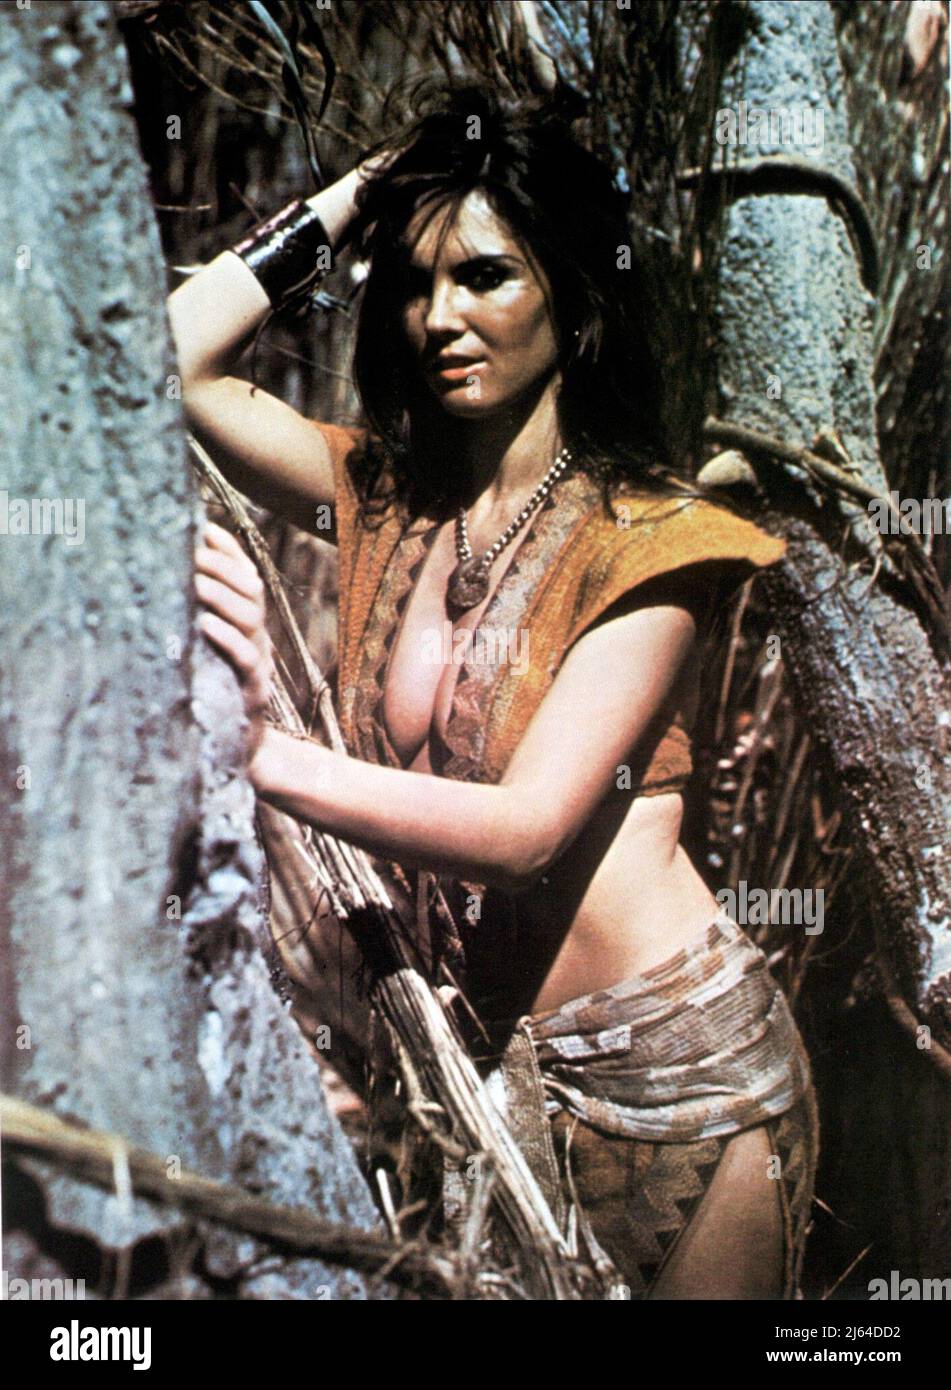 CAROLINE MUNRO, AT THE EARTH'S CORE, 1976 Stock Photo